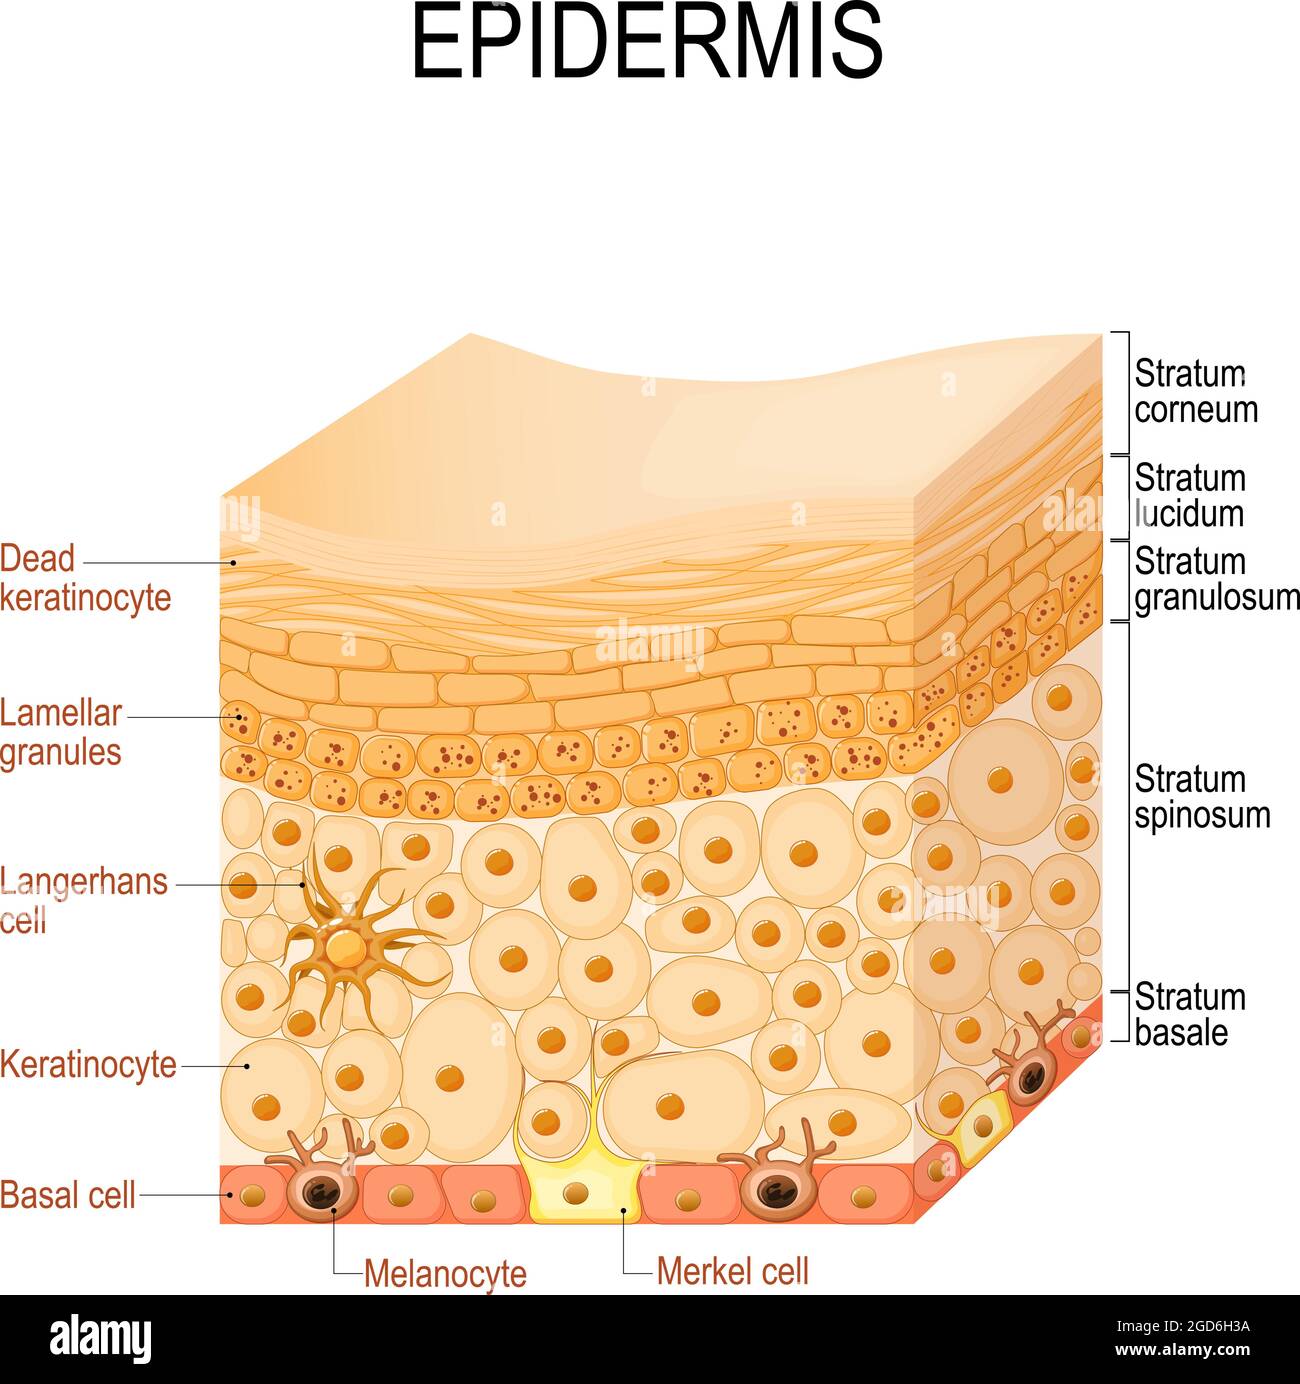 Anatomia epidermica. Strati e struttura cellulare della pelle umana. Primo piano dell'epidermide. Illustrazione vettoriale Illustrazione Vettoriale